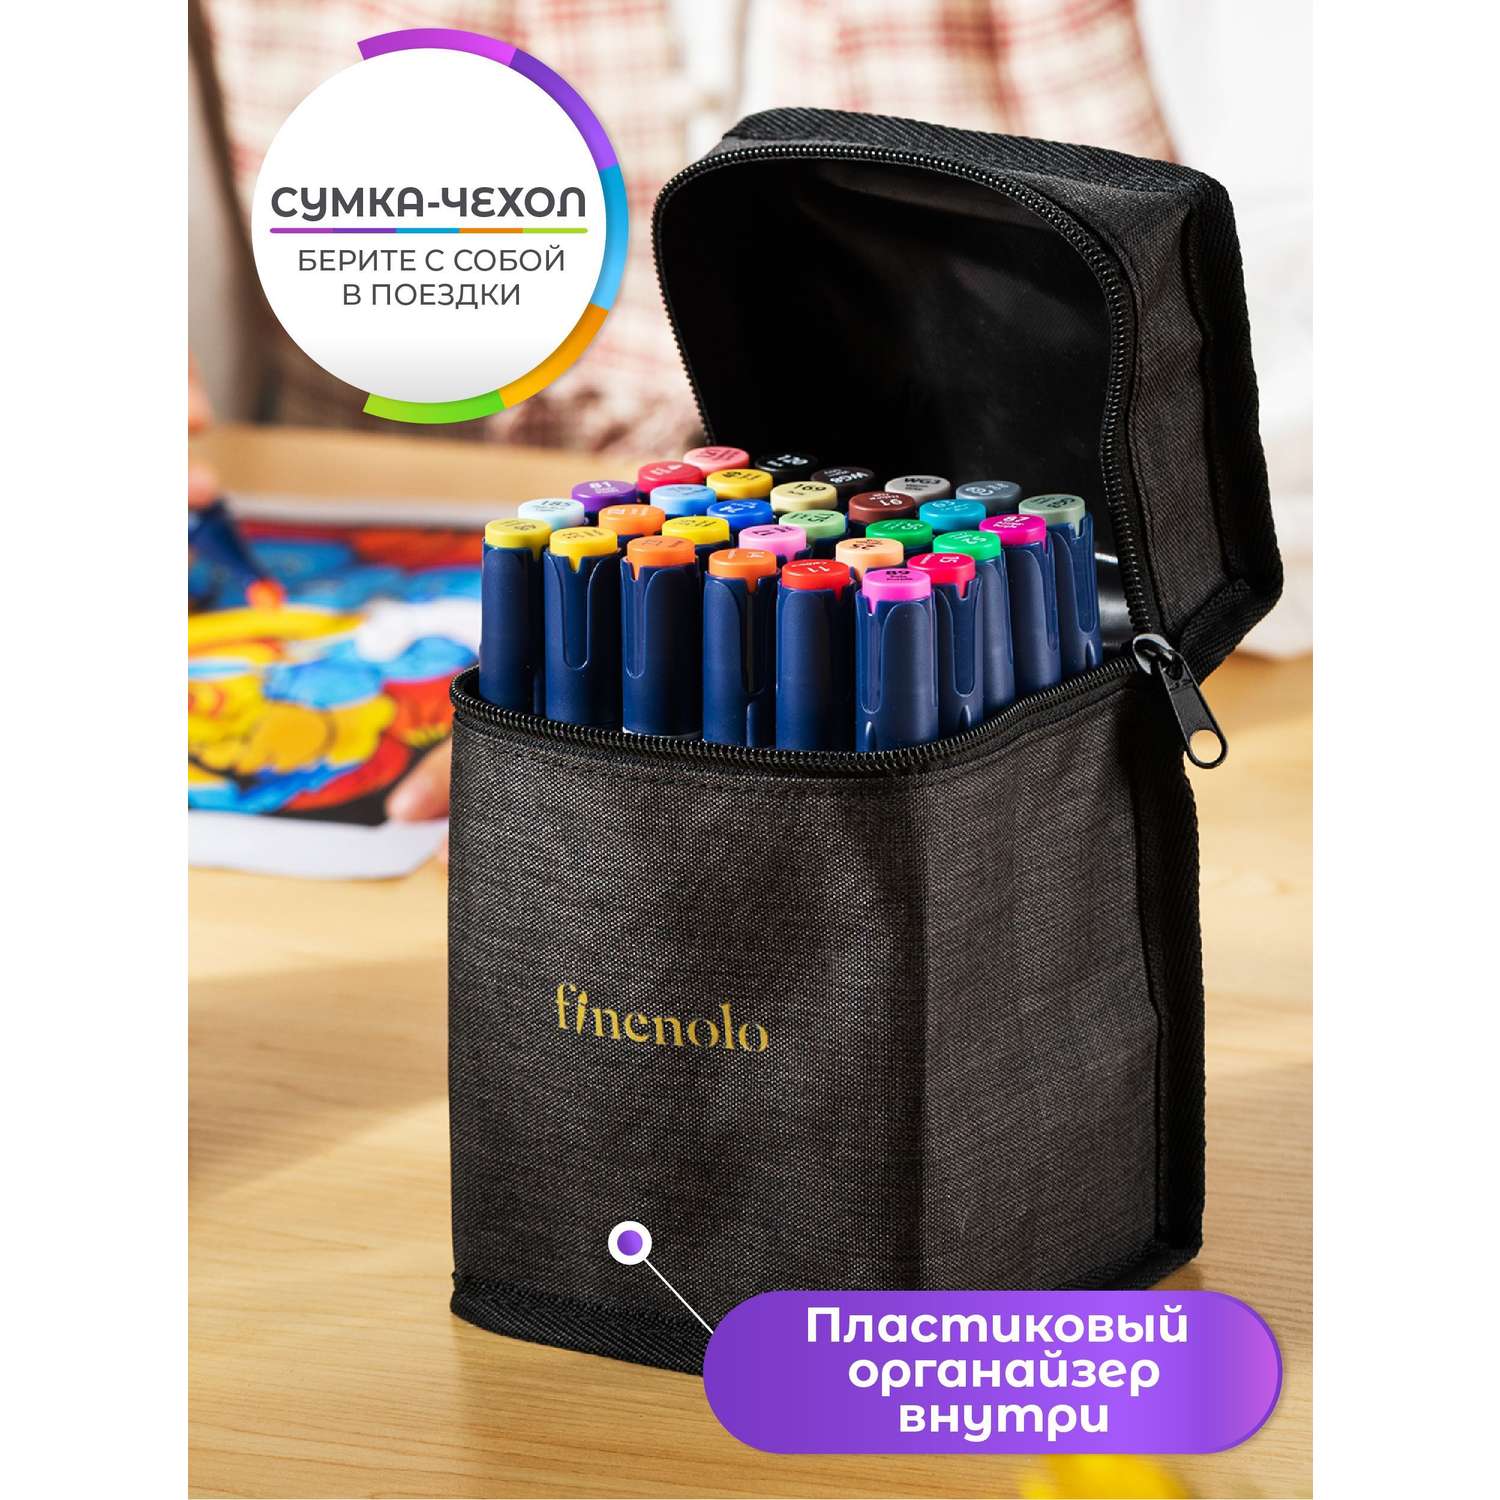 Набор спиртовых маркеров Finenolo 2 пера:кисть+долото 40 цветов в сумке-пенале - фото 4